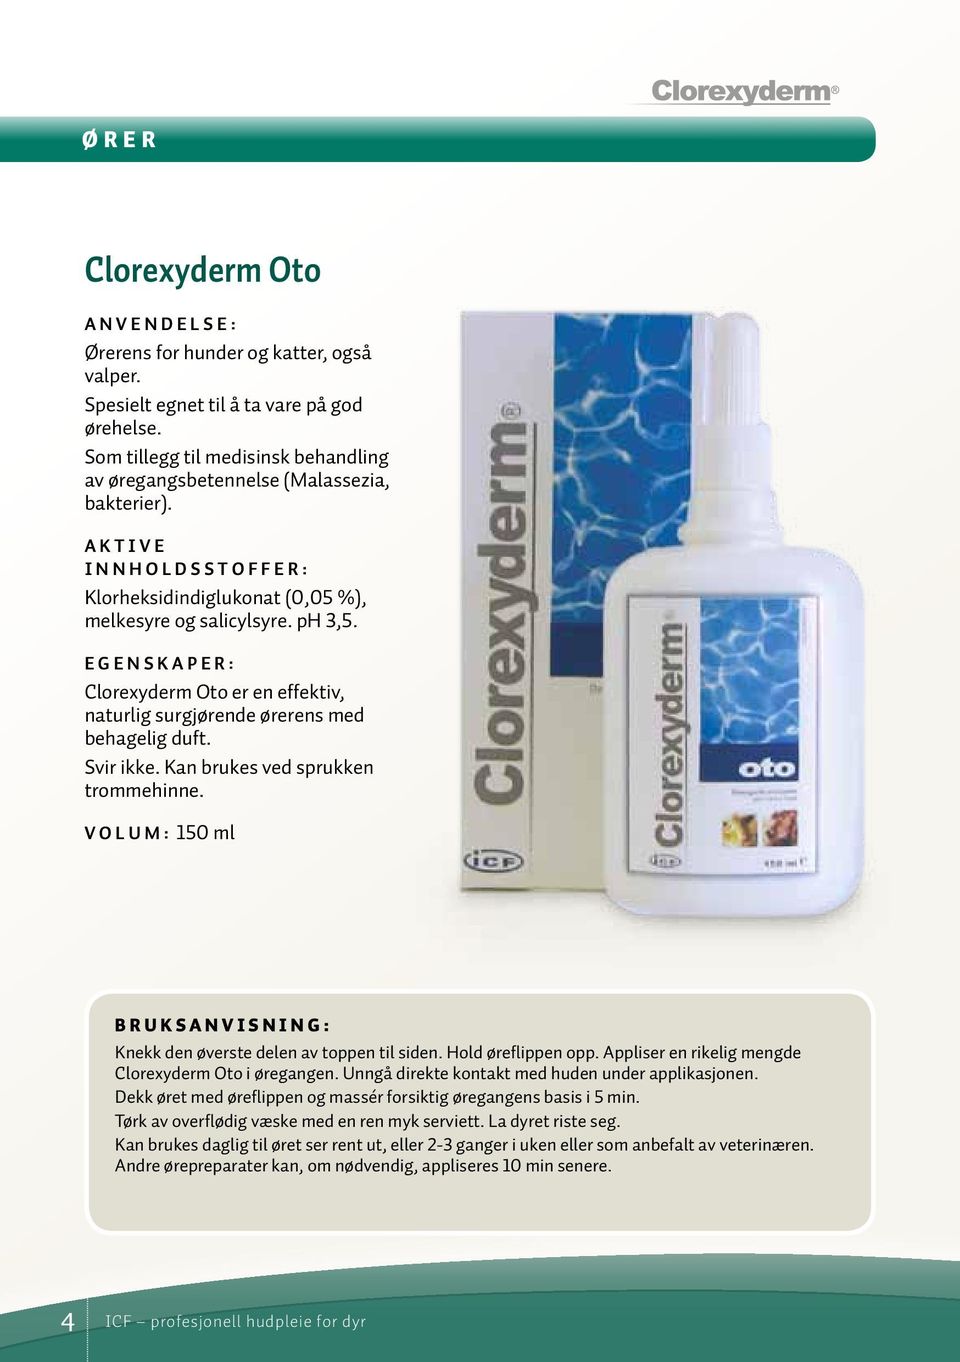 Clorexyderm Oto er en effektiv, naturlig surgjørende ørerens med behagelig duft. Svir ikke. Kan brukes ved sprukken trommehinne.